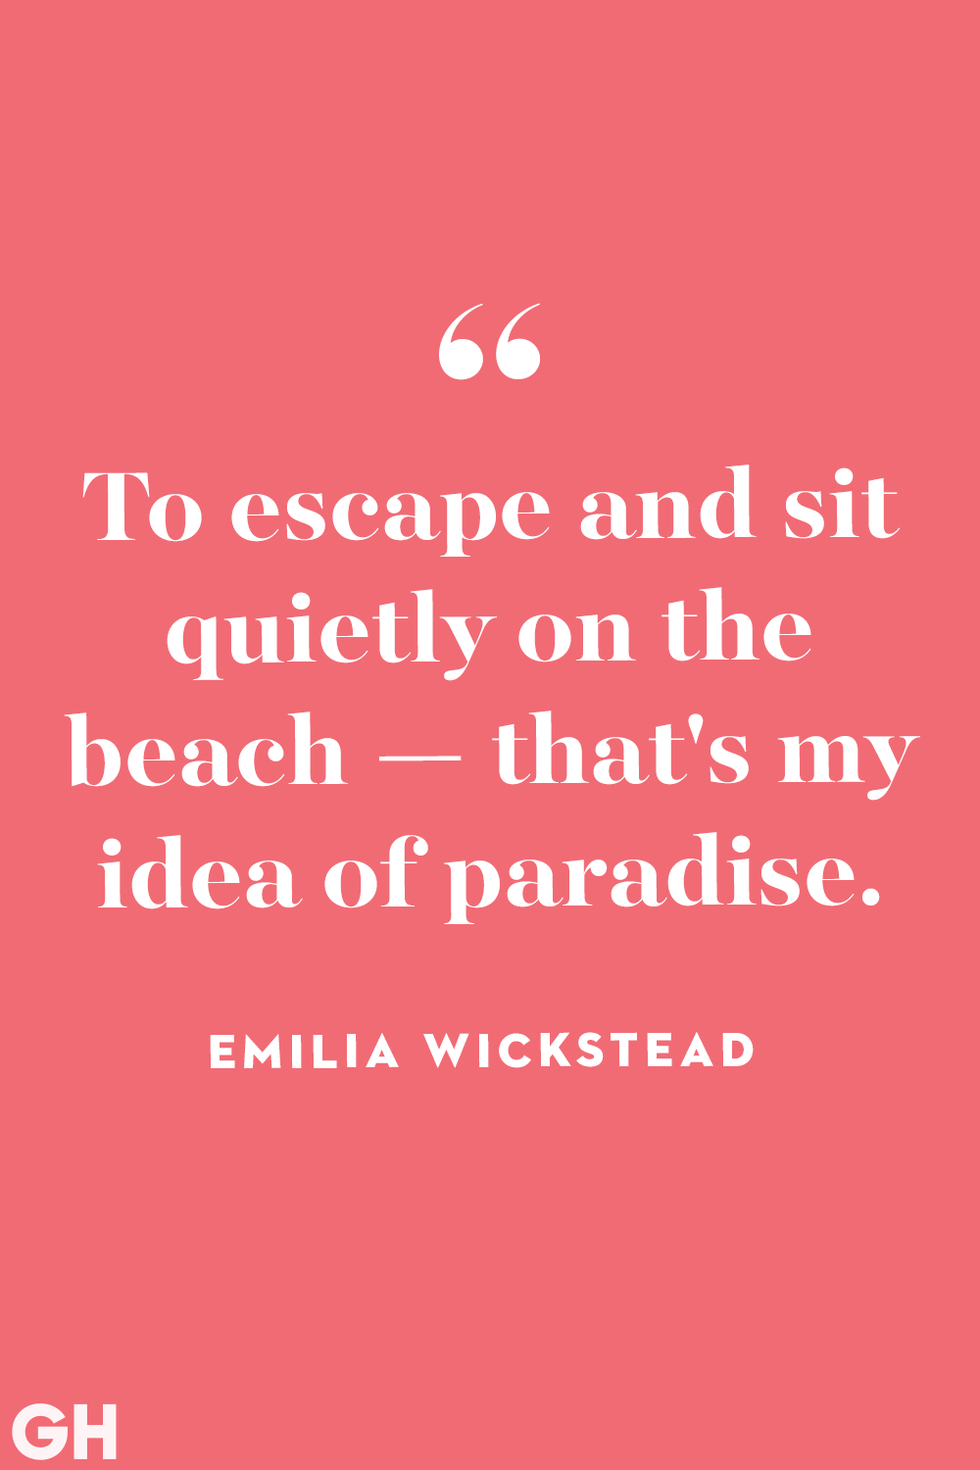 summer quotes emilia wickstead